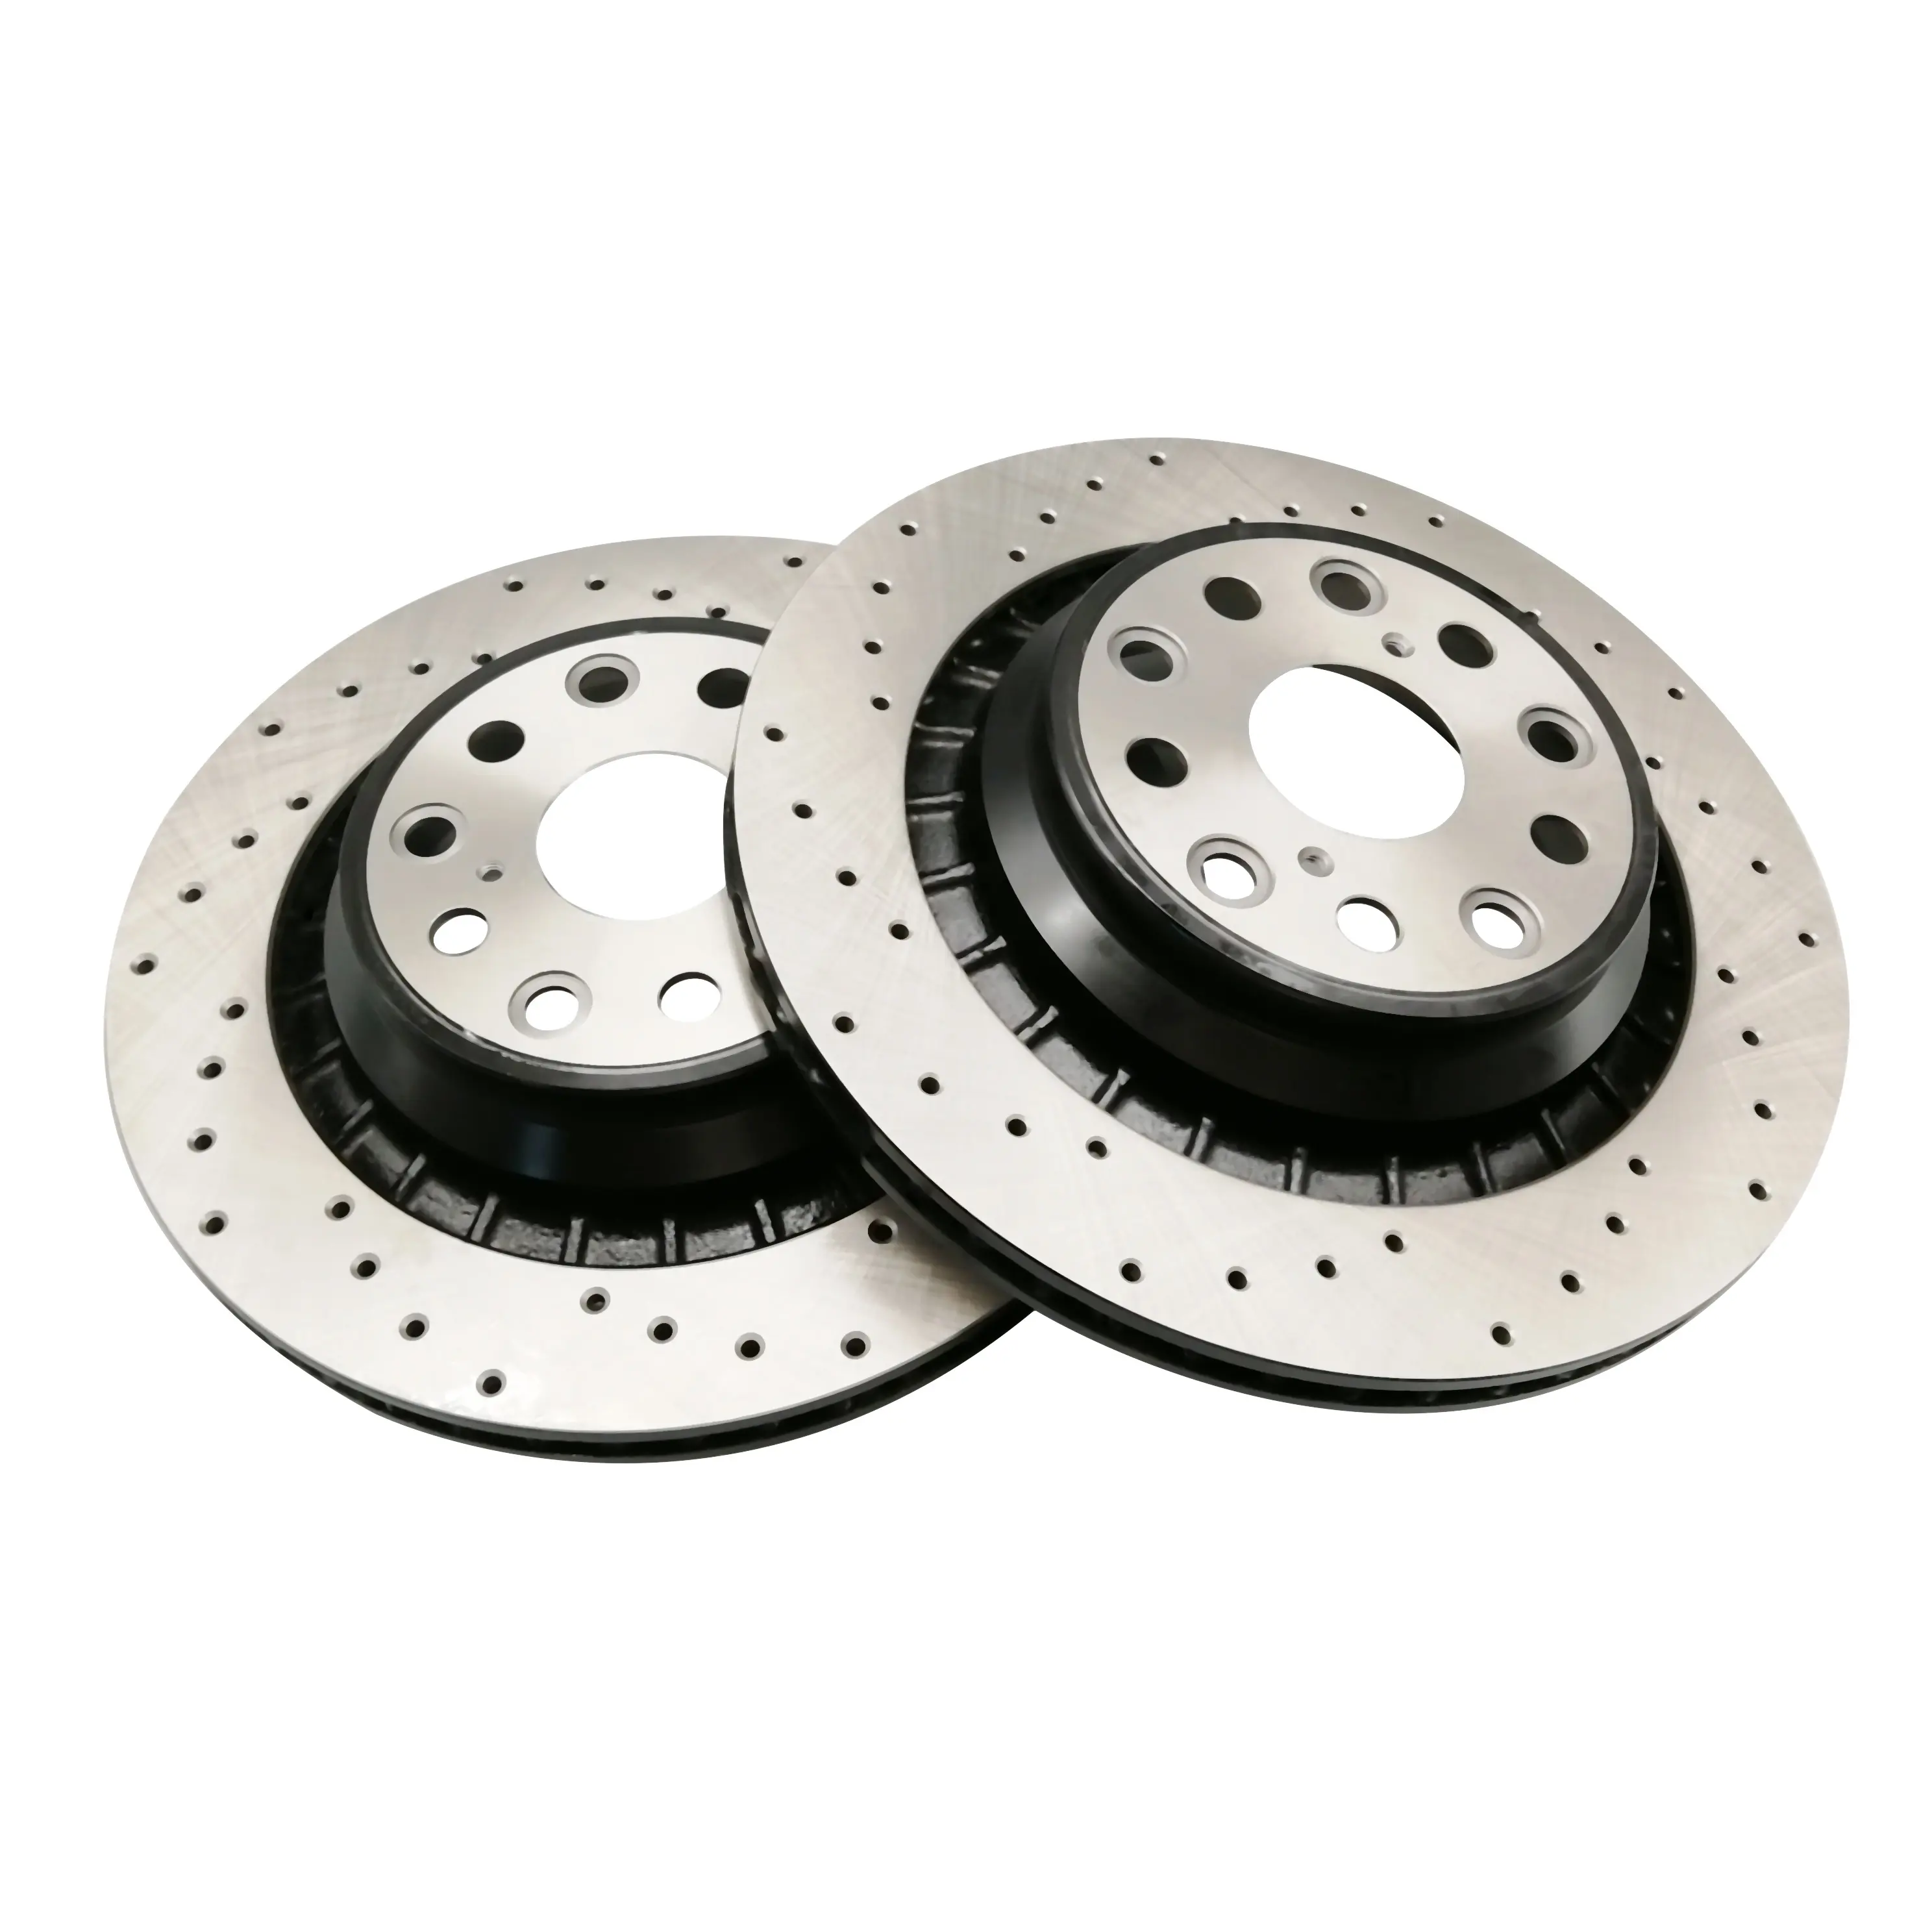 Frontech High quality brake disc rotor and brake disk for honda for toyota innova